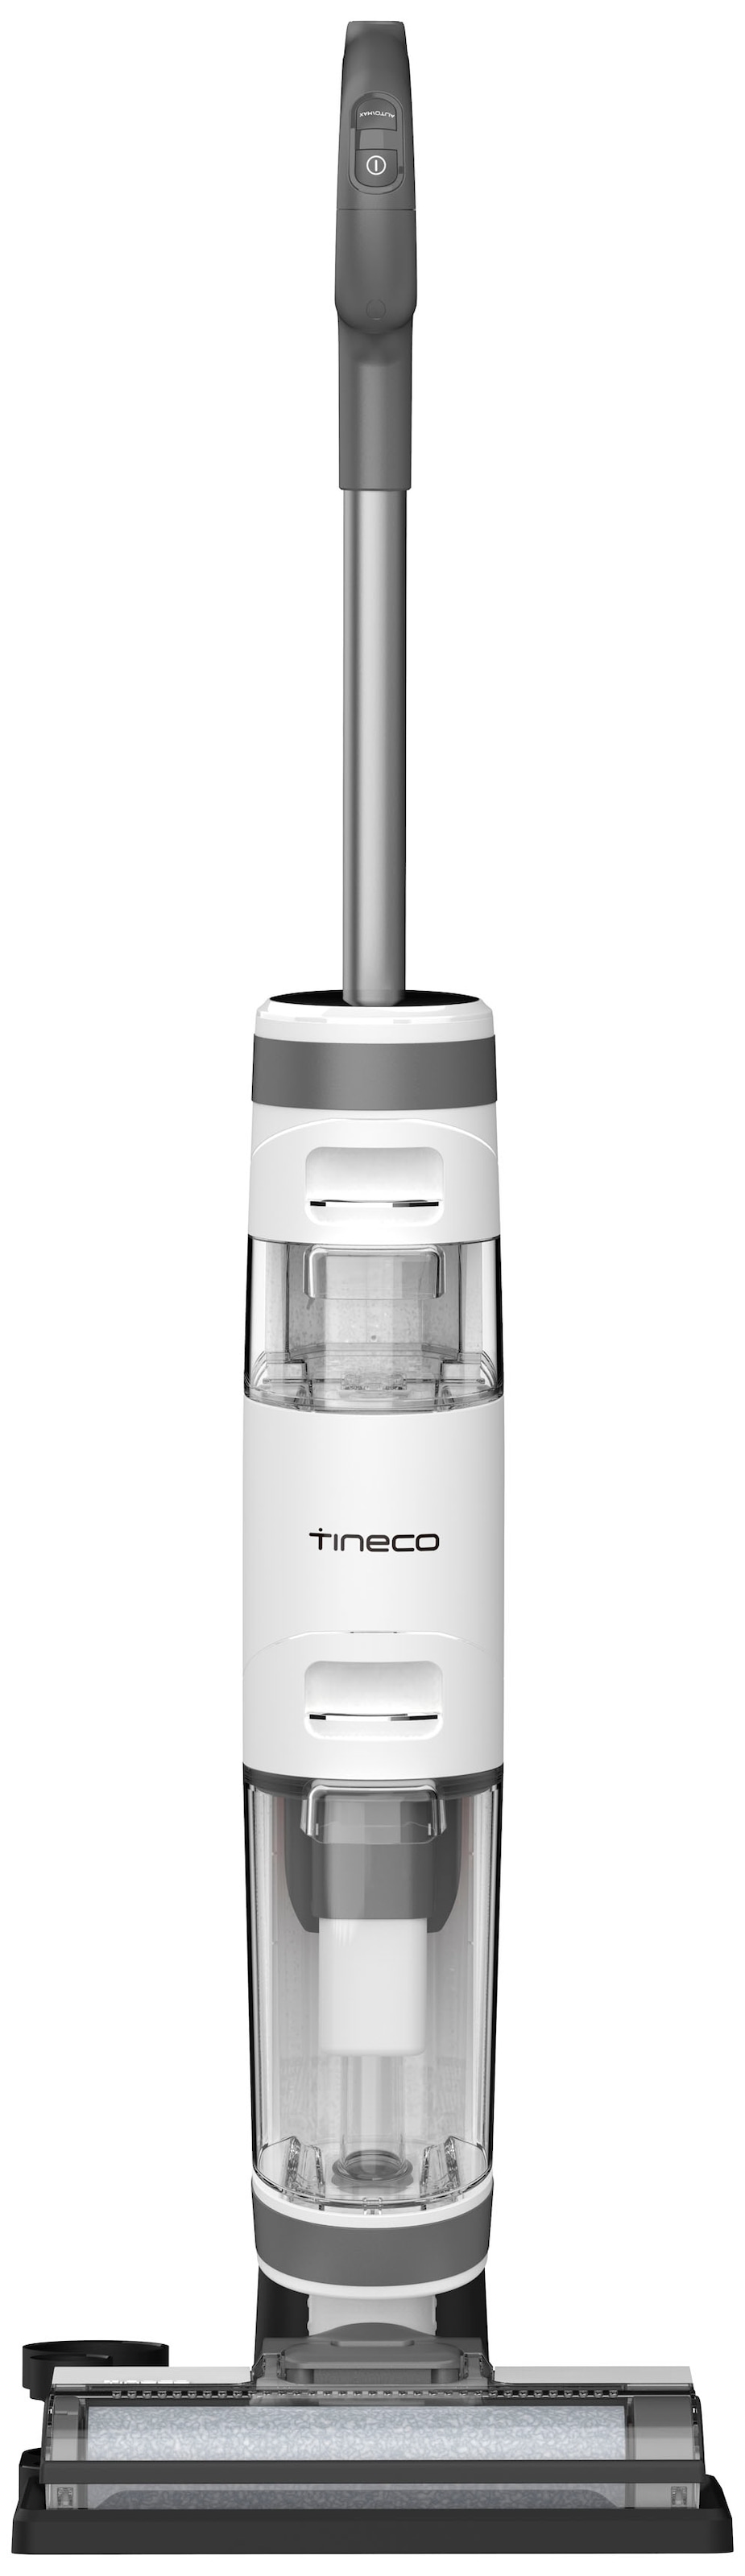 Tineco Nass-Trocken-Akkusauger »iFloor 3 Plus Nass-Trocken Akkusauger, alle Hartböden, kabellos«, mit Selbstreinigung, mit LED Display, bis zu 25 Min Laufzeit